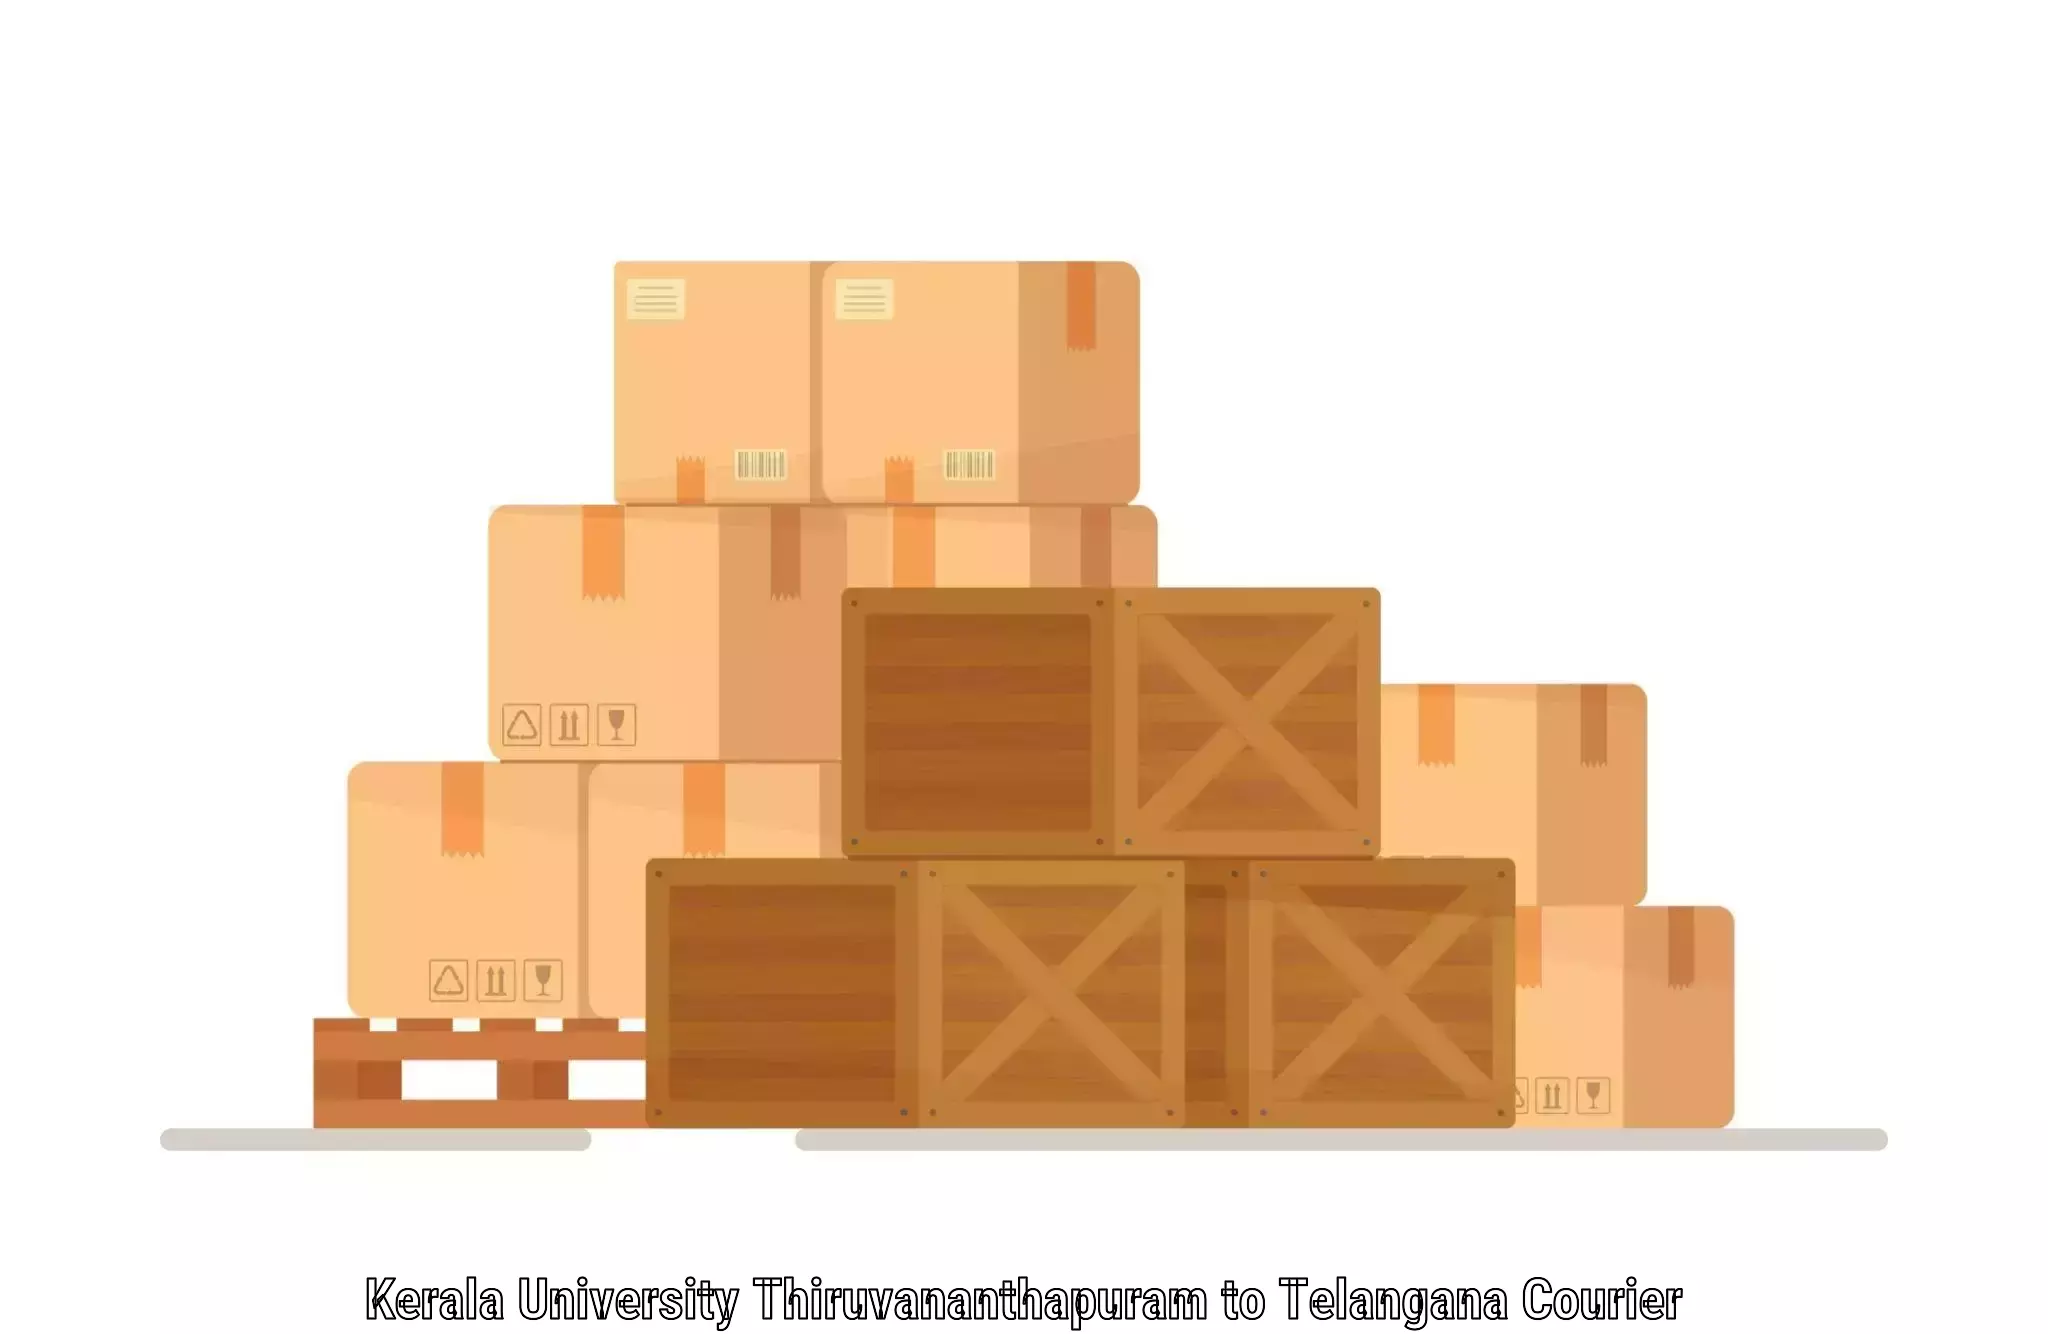 Package delivery network Kerala University Thiruvananthapuram to Narmetta